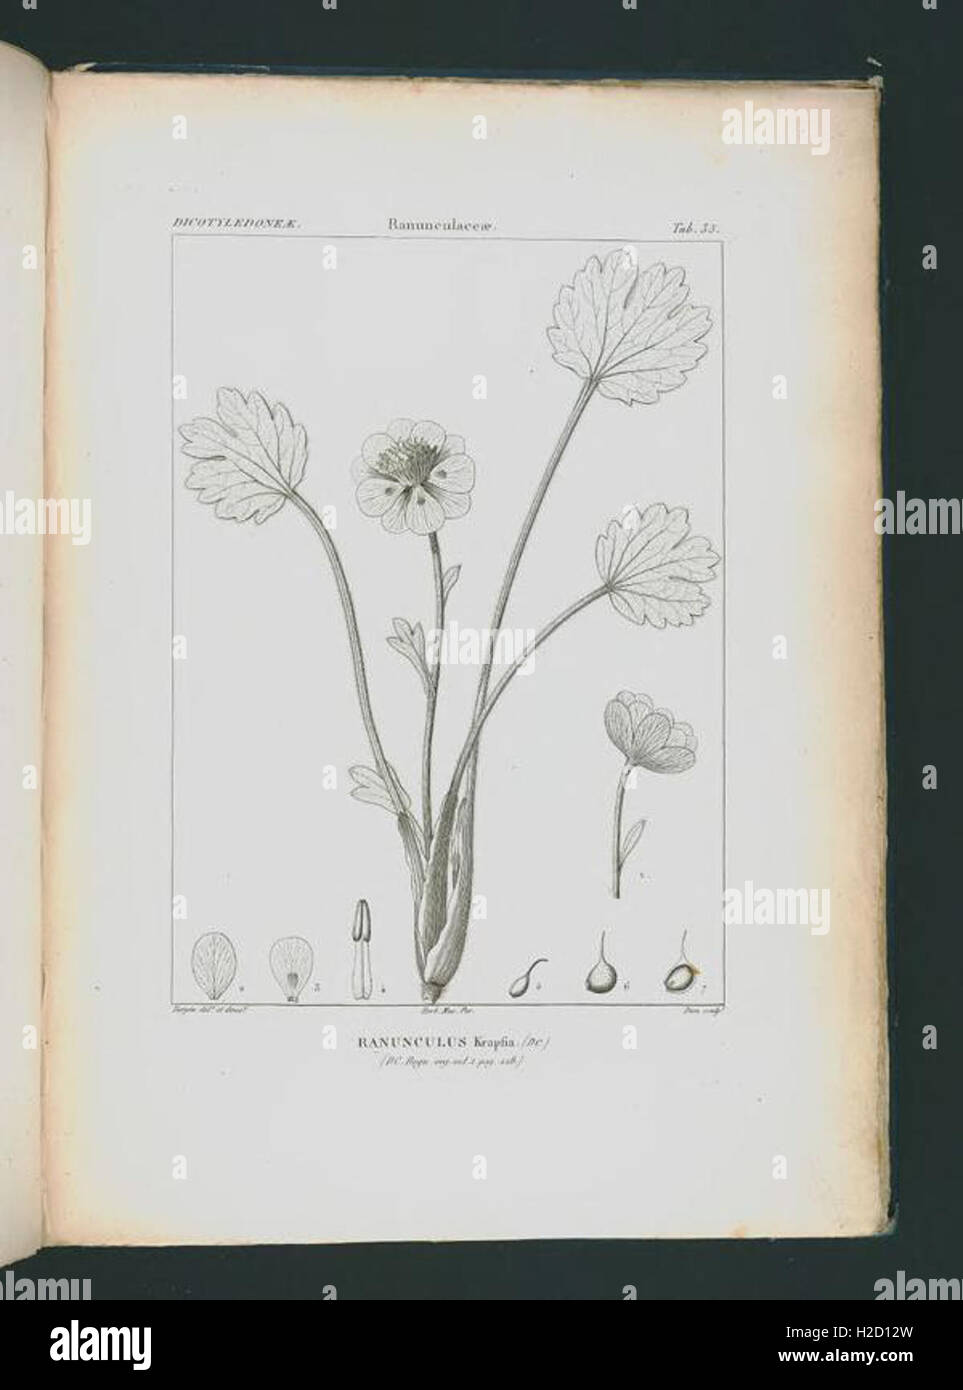 Icones selectae plantarum quas in systemate universali (Tab. 35 Stock Photo